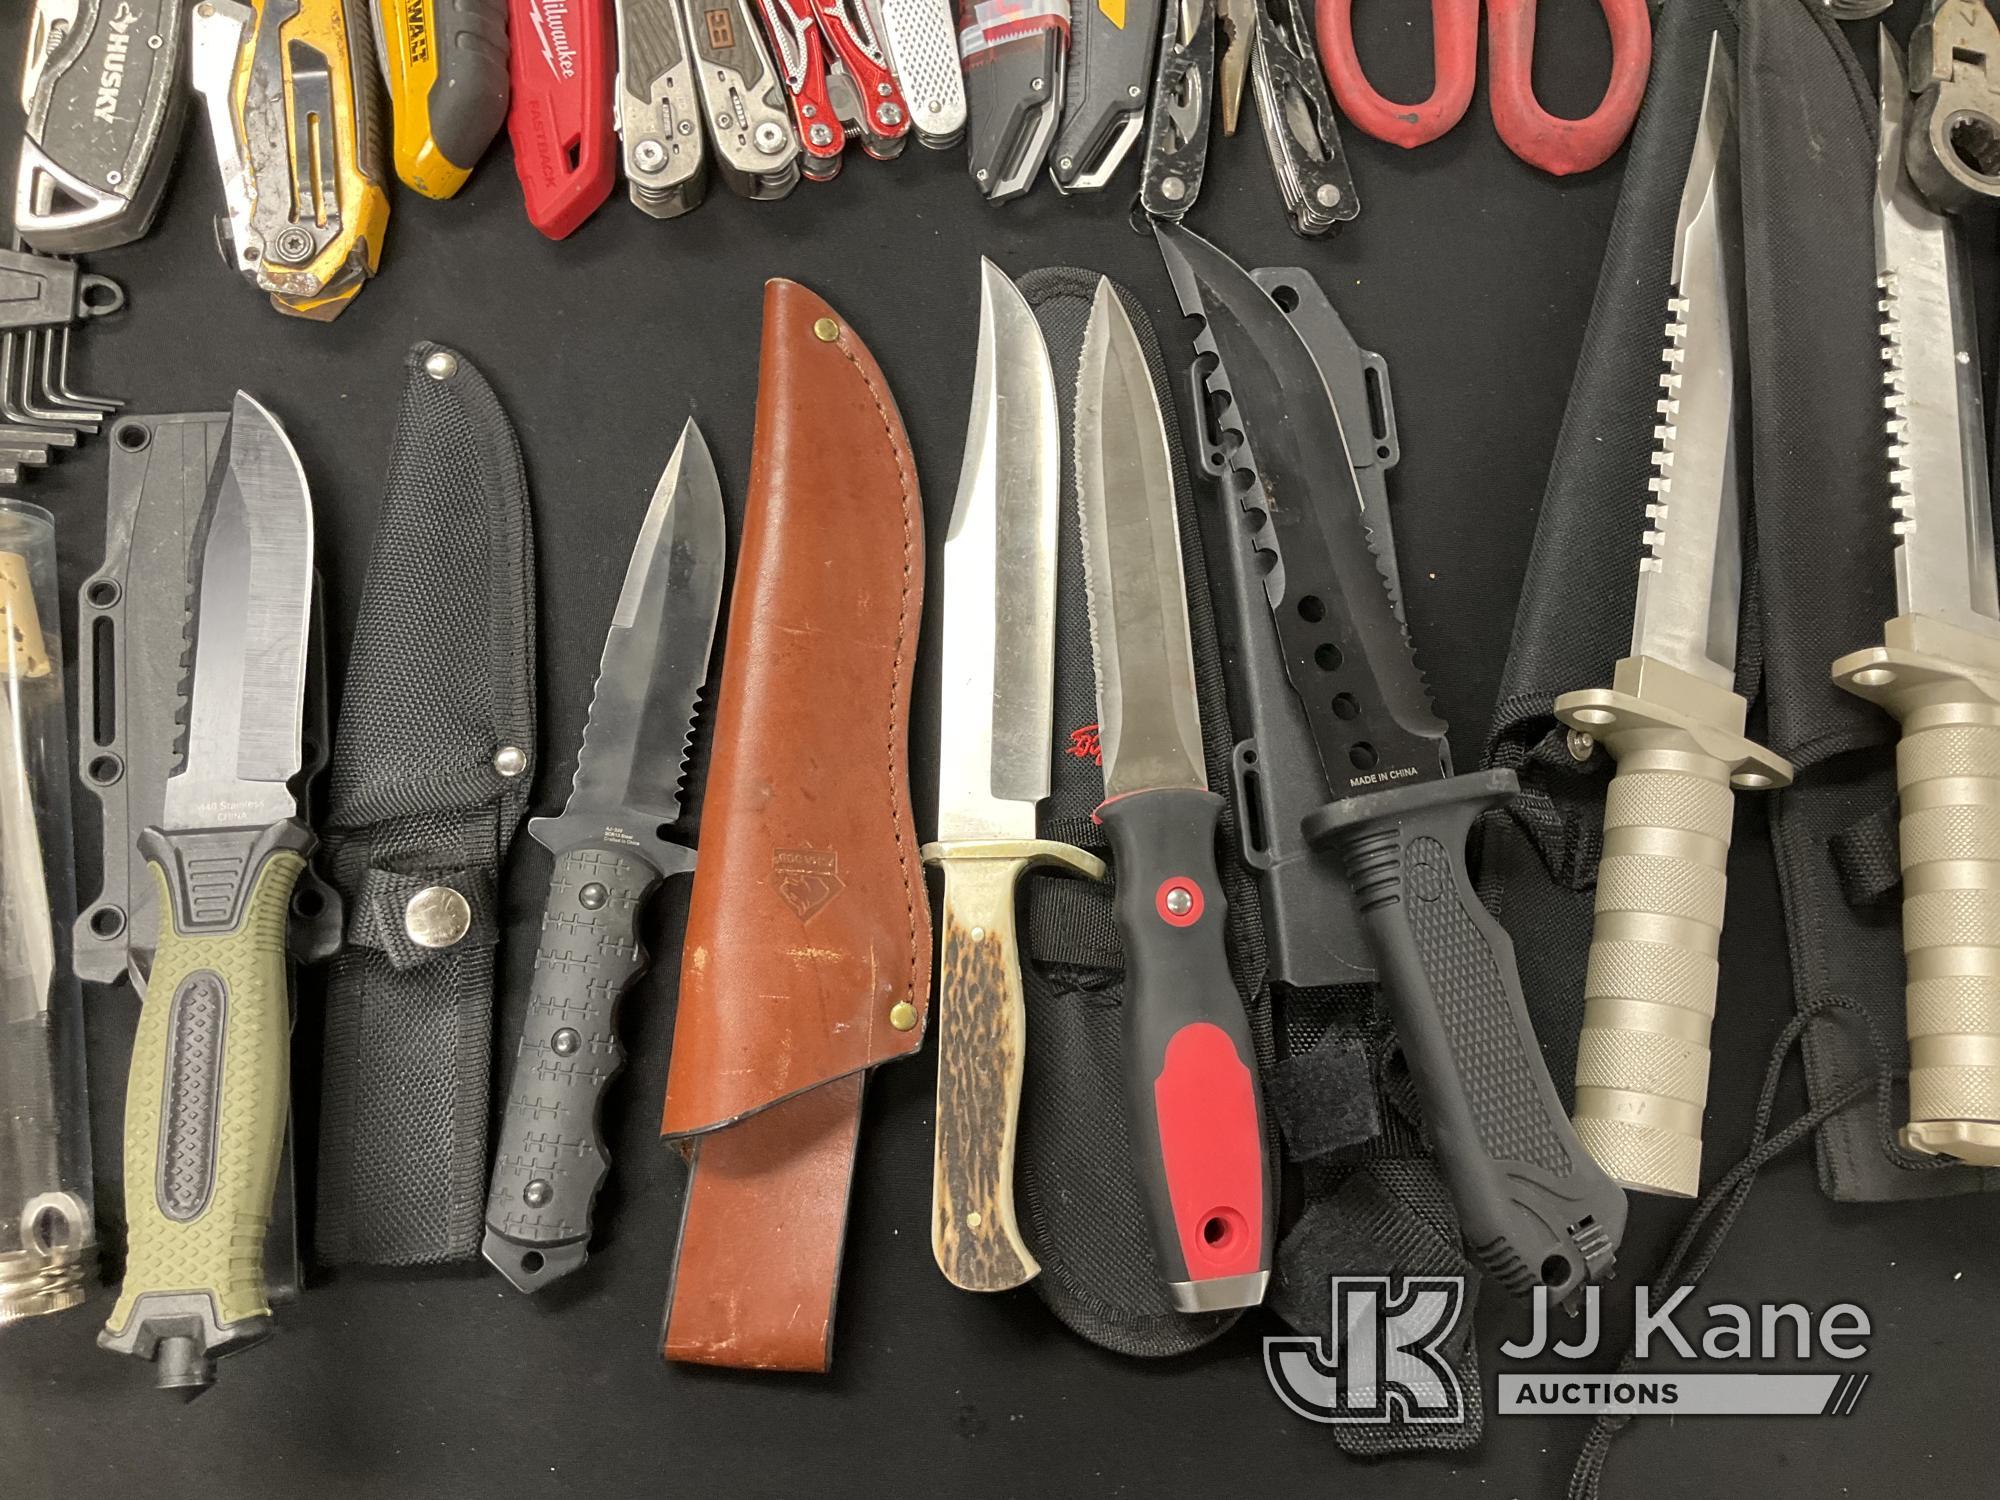 (Jurupa Valley, CA) Knives Used